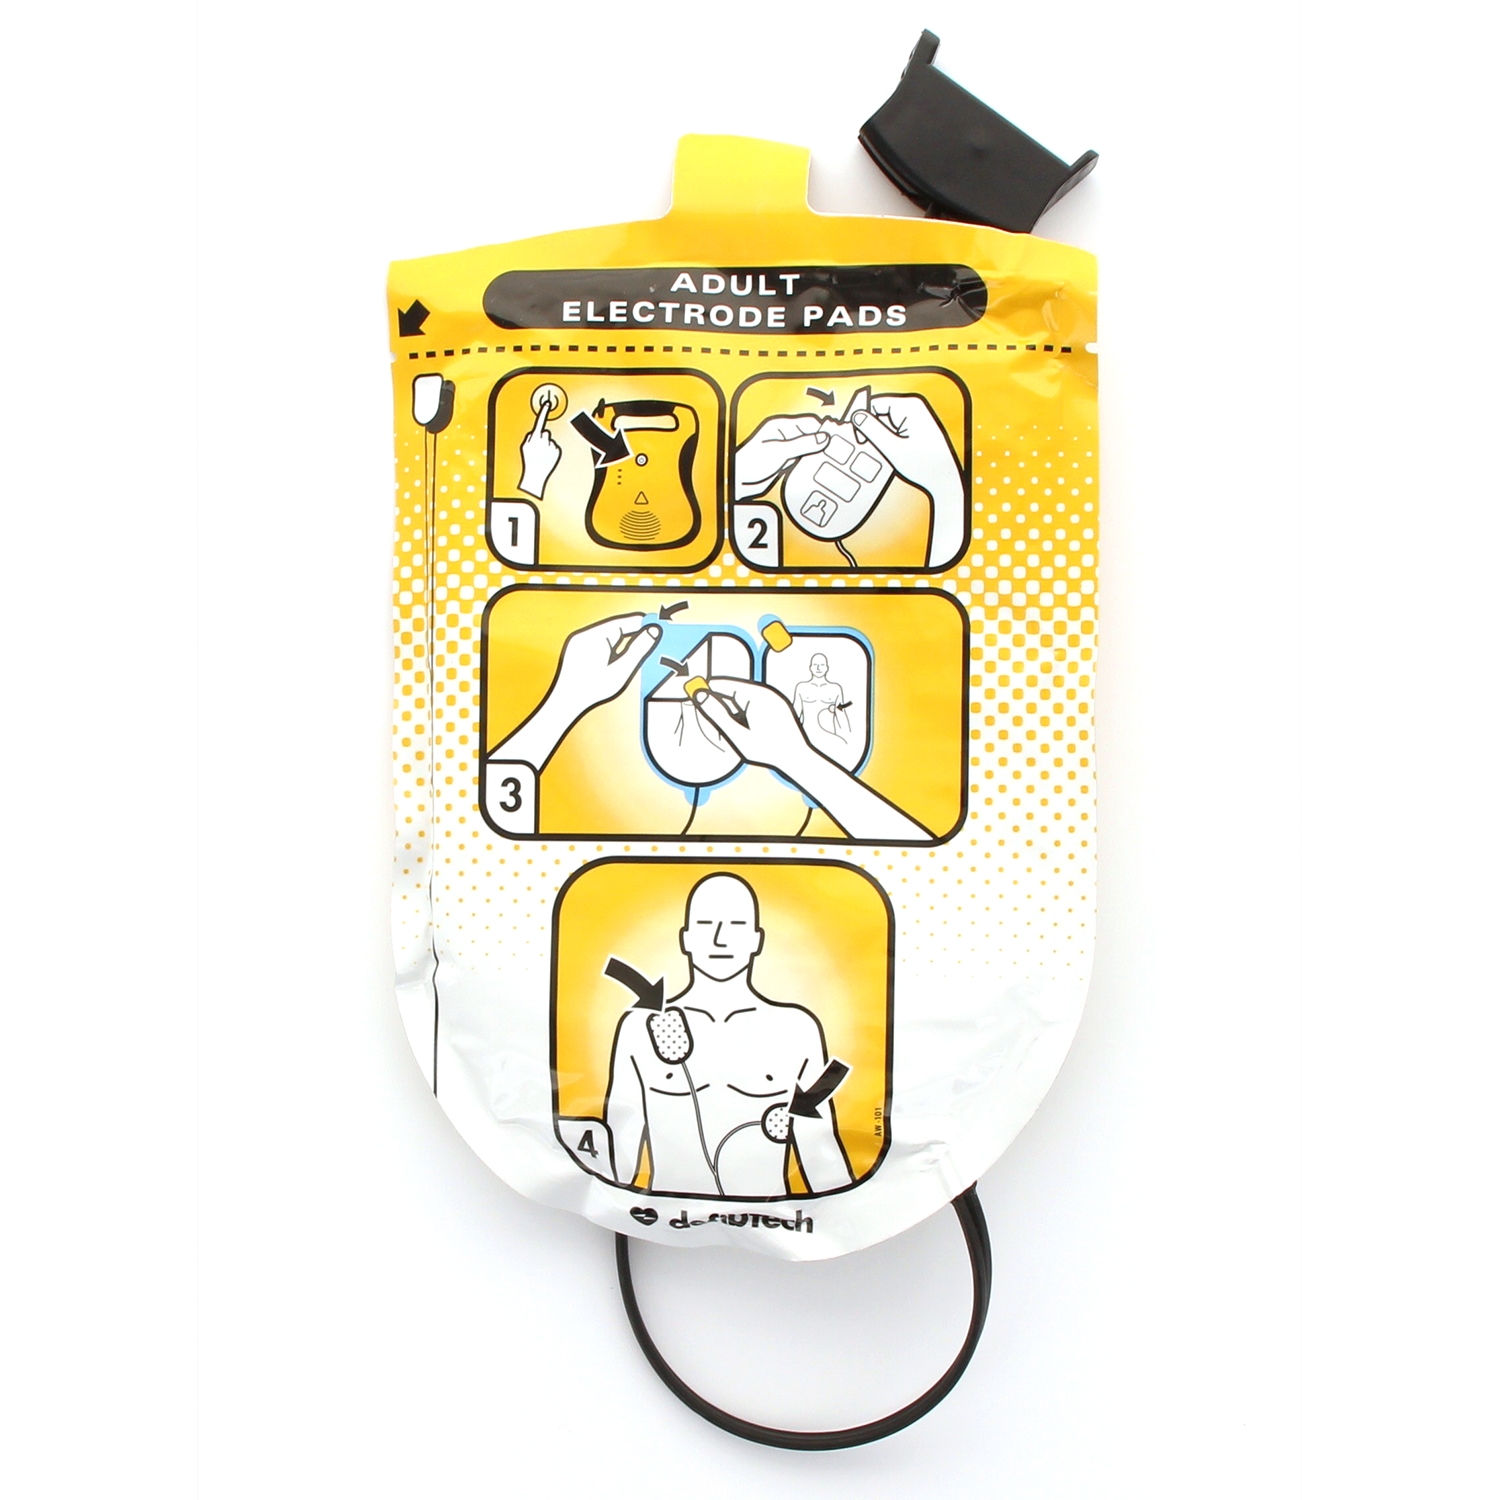 AED électrodes pour Defibtech lifeline AED - Adultes (2 pcs)